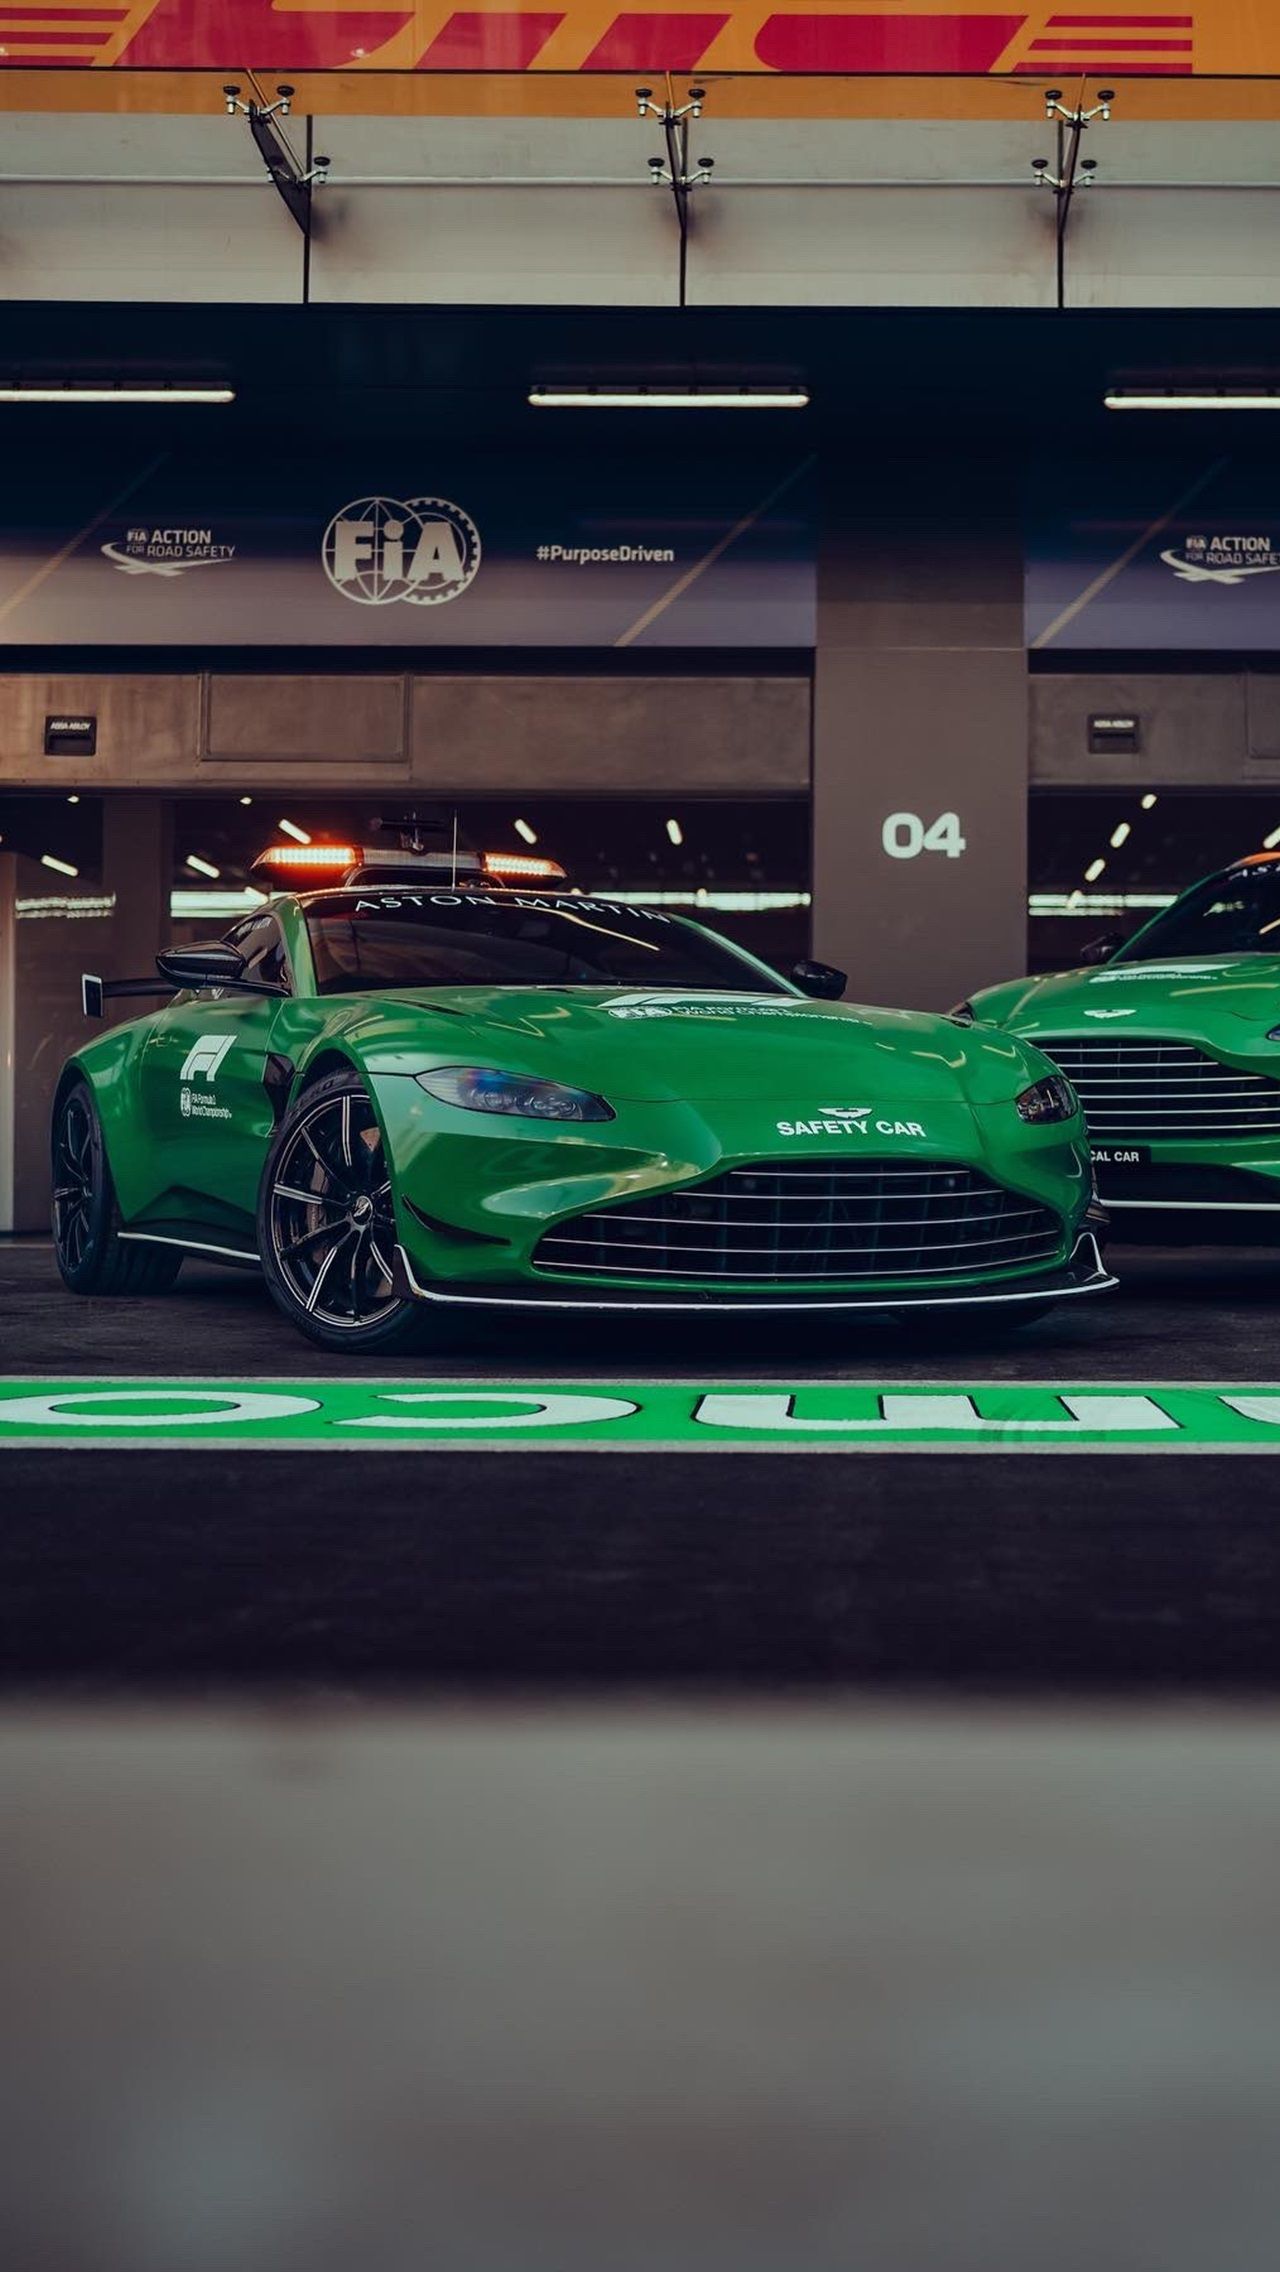 Машина безопасности от Aston Martin с места до 100 км/ч разгоняется за 3,6 секунды и развивает 310 км/ч максимальной скорости, а <a href="https://www.championat.com/auto/article-4636327-novye-sejfti-kar-i-medicinskij-avtomobil-ot-mersedesa-dlya-formuly-1-harakteristiki-i-foto.html">сейфти-кар от Mercedes-AMG</a> проделывает аналогичное упражнение за 3,2 с и показывает потолок в 325 км/ч.